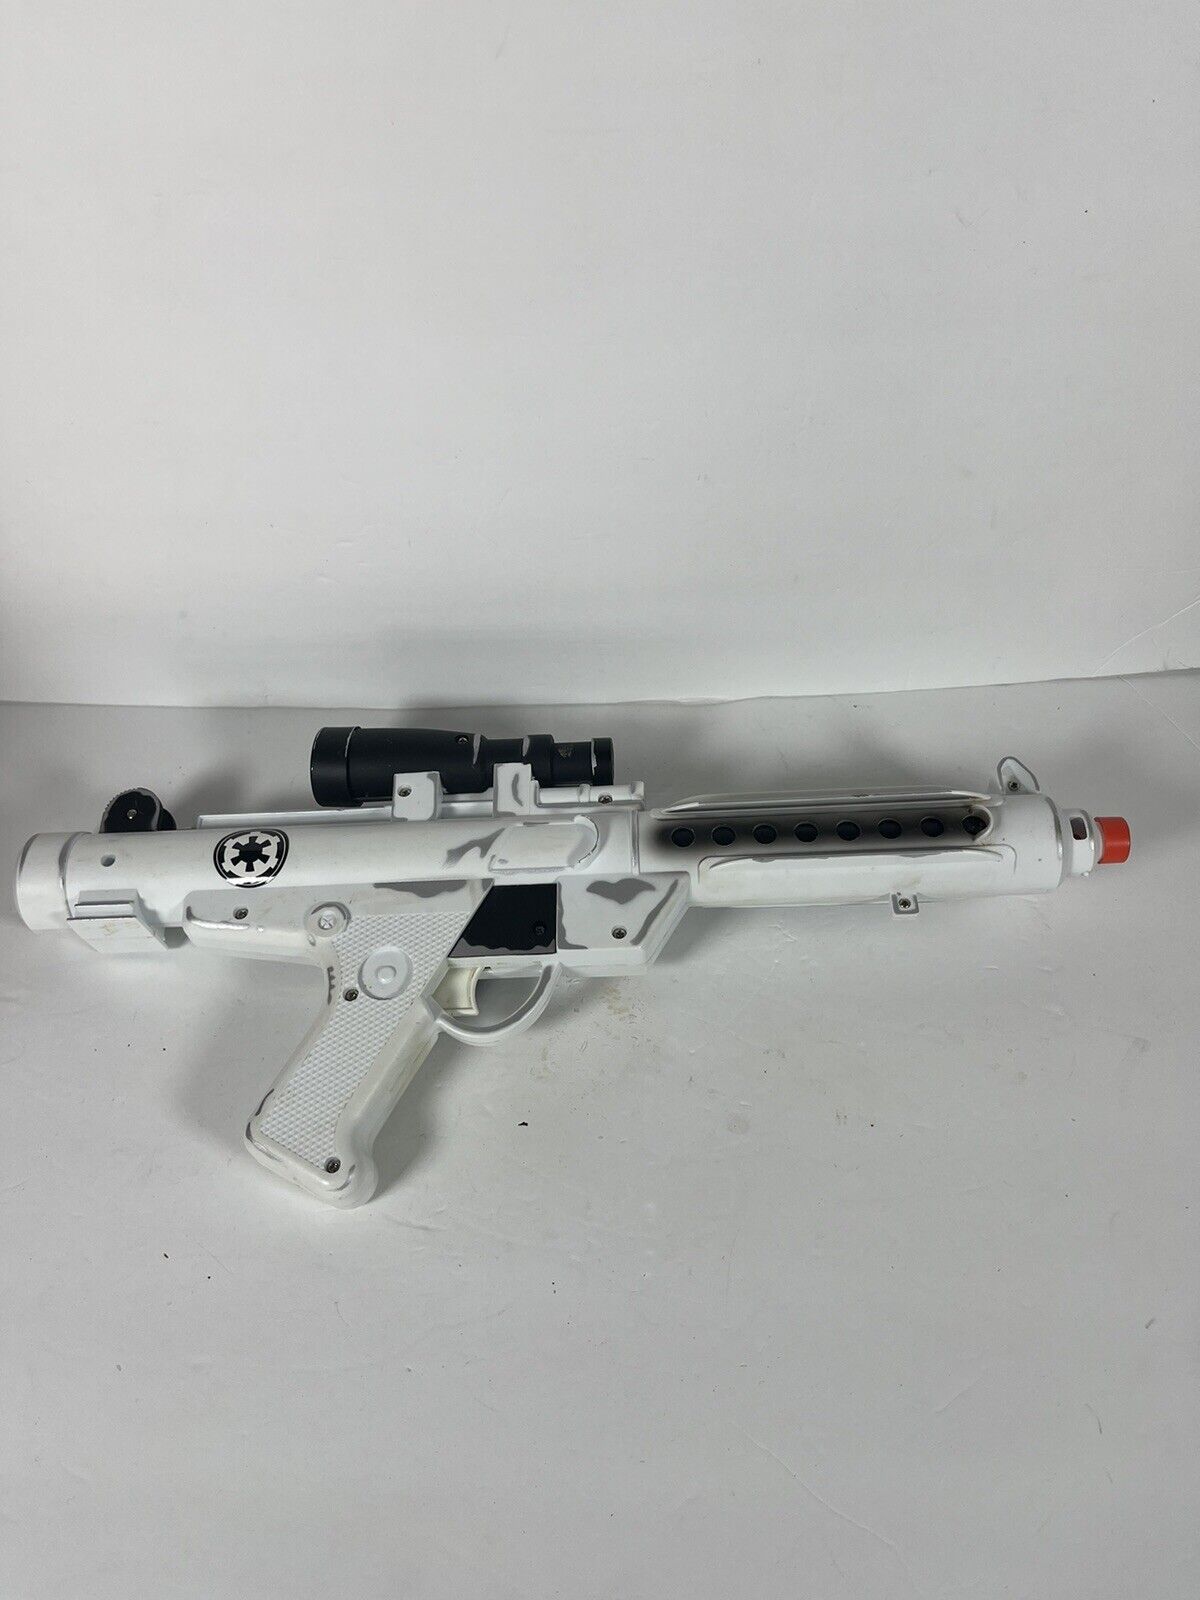 Vintage Star Wars Stormtrooper Blaster Rifle Gun Toy Weapon 1996 Lucasfilm